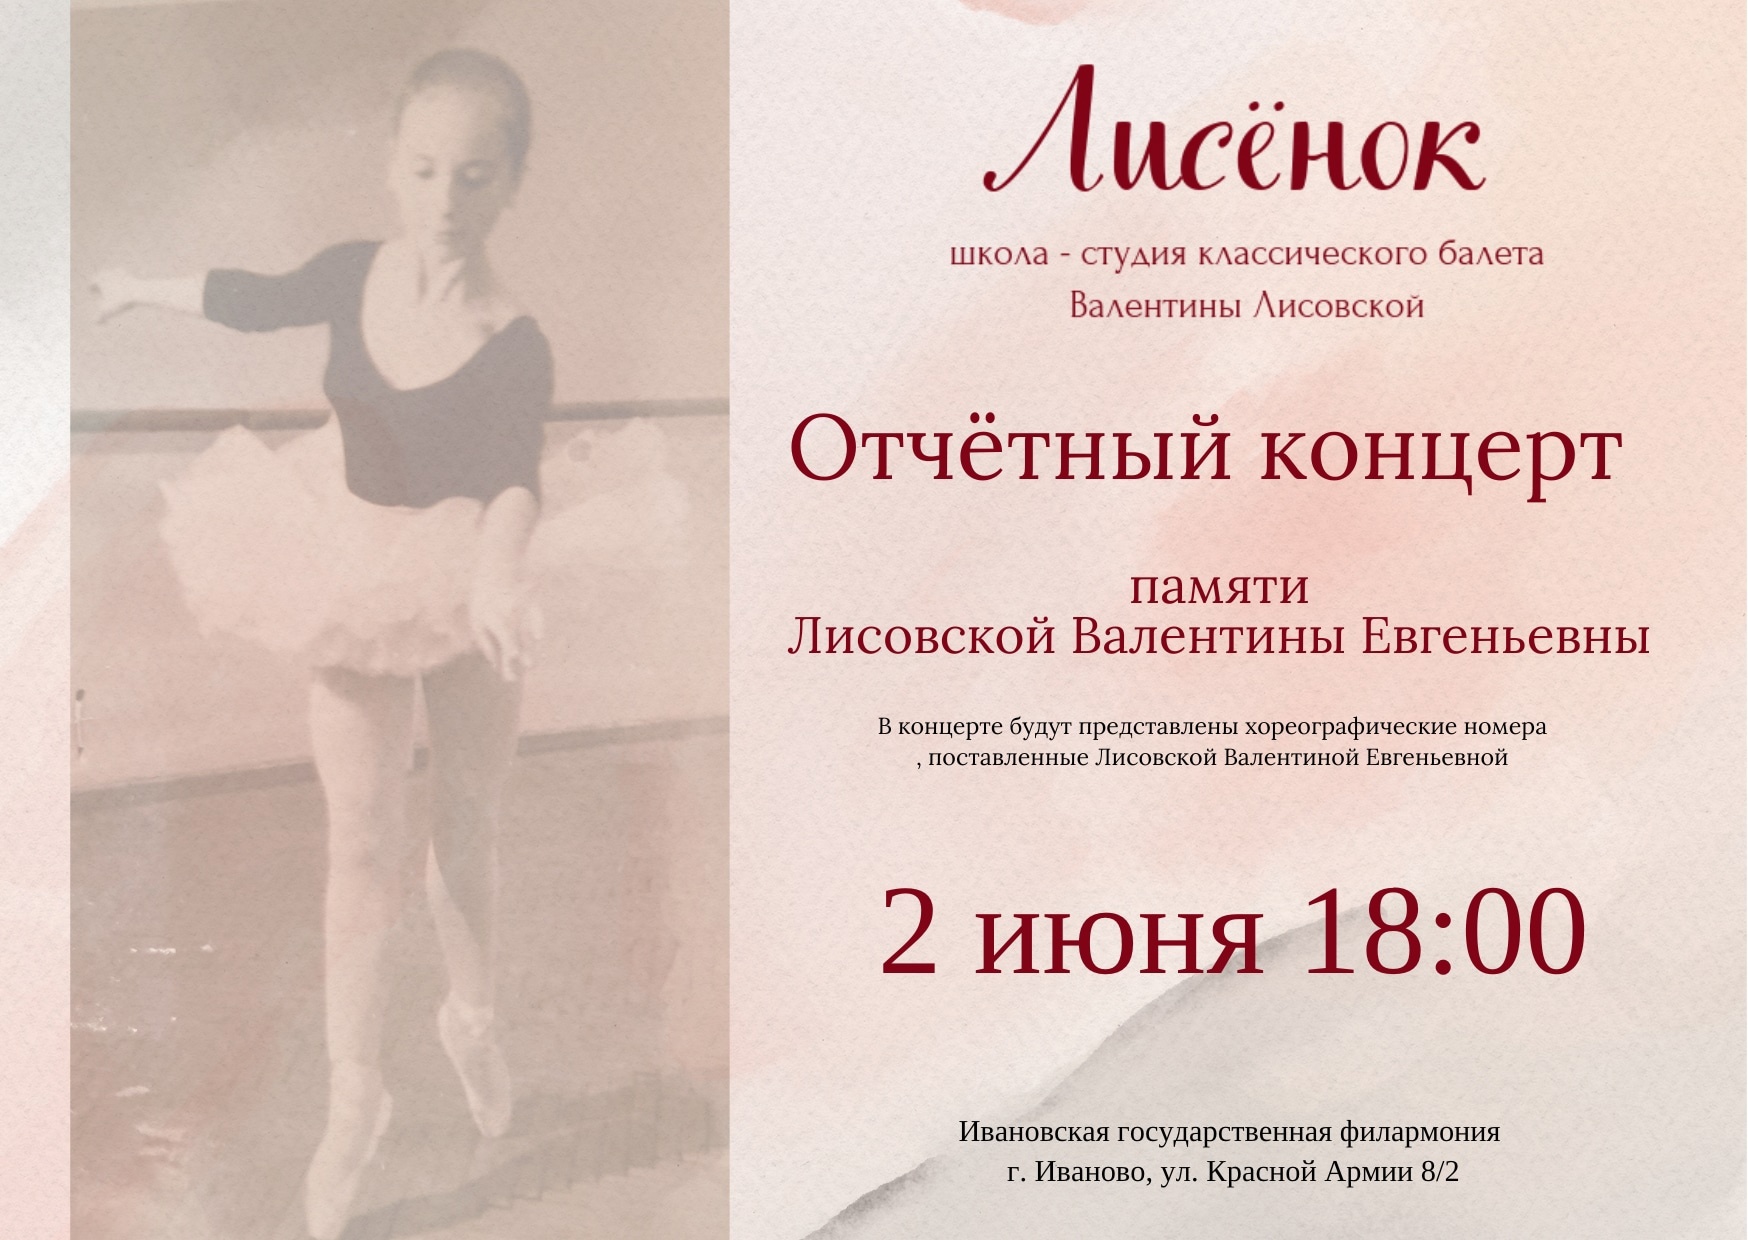 Концерт балетной студии в Иванове посвятят памяти Валентины Лисовской